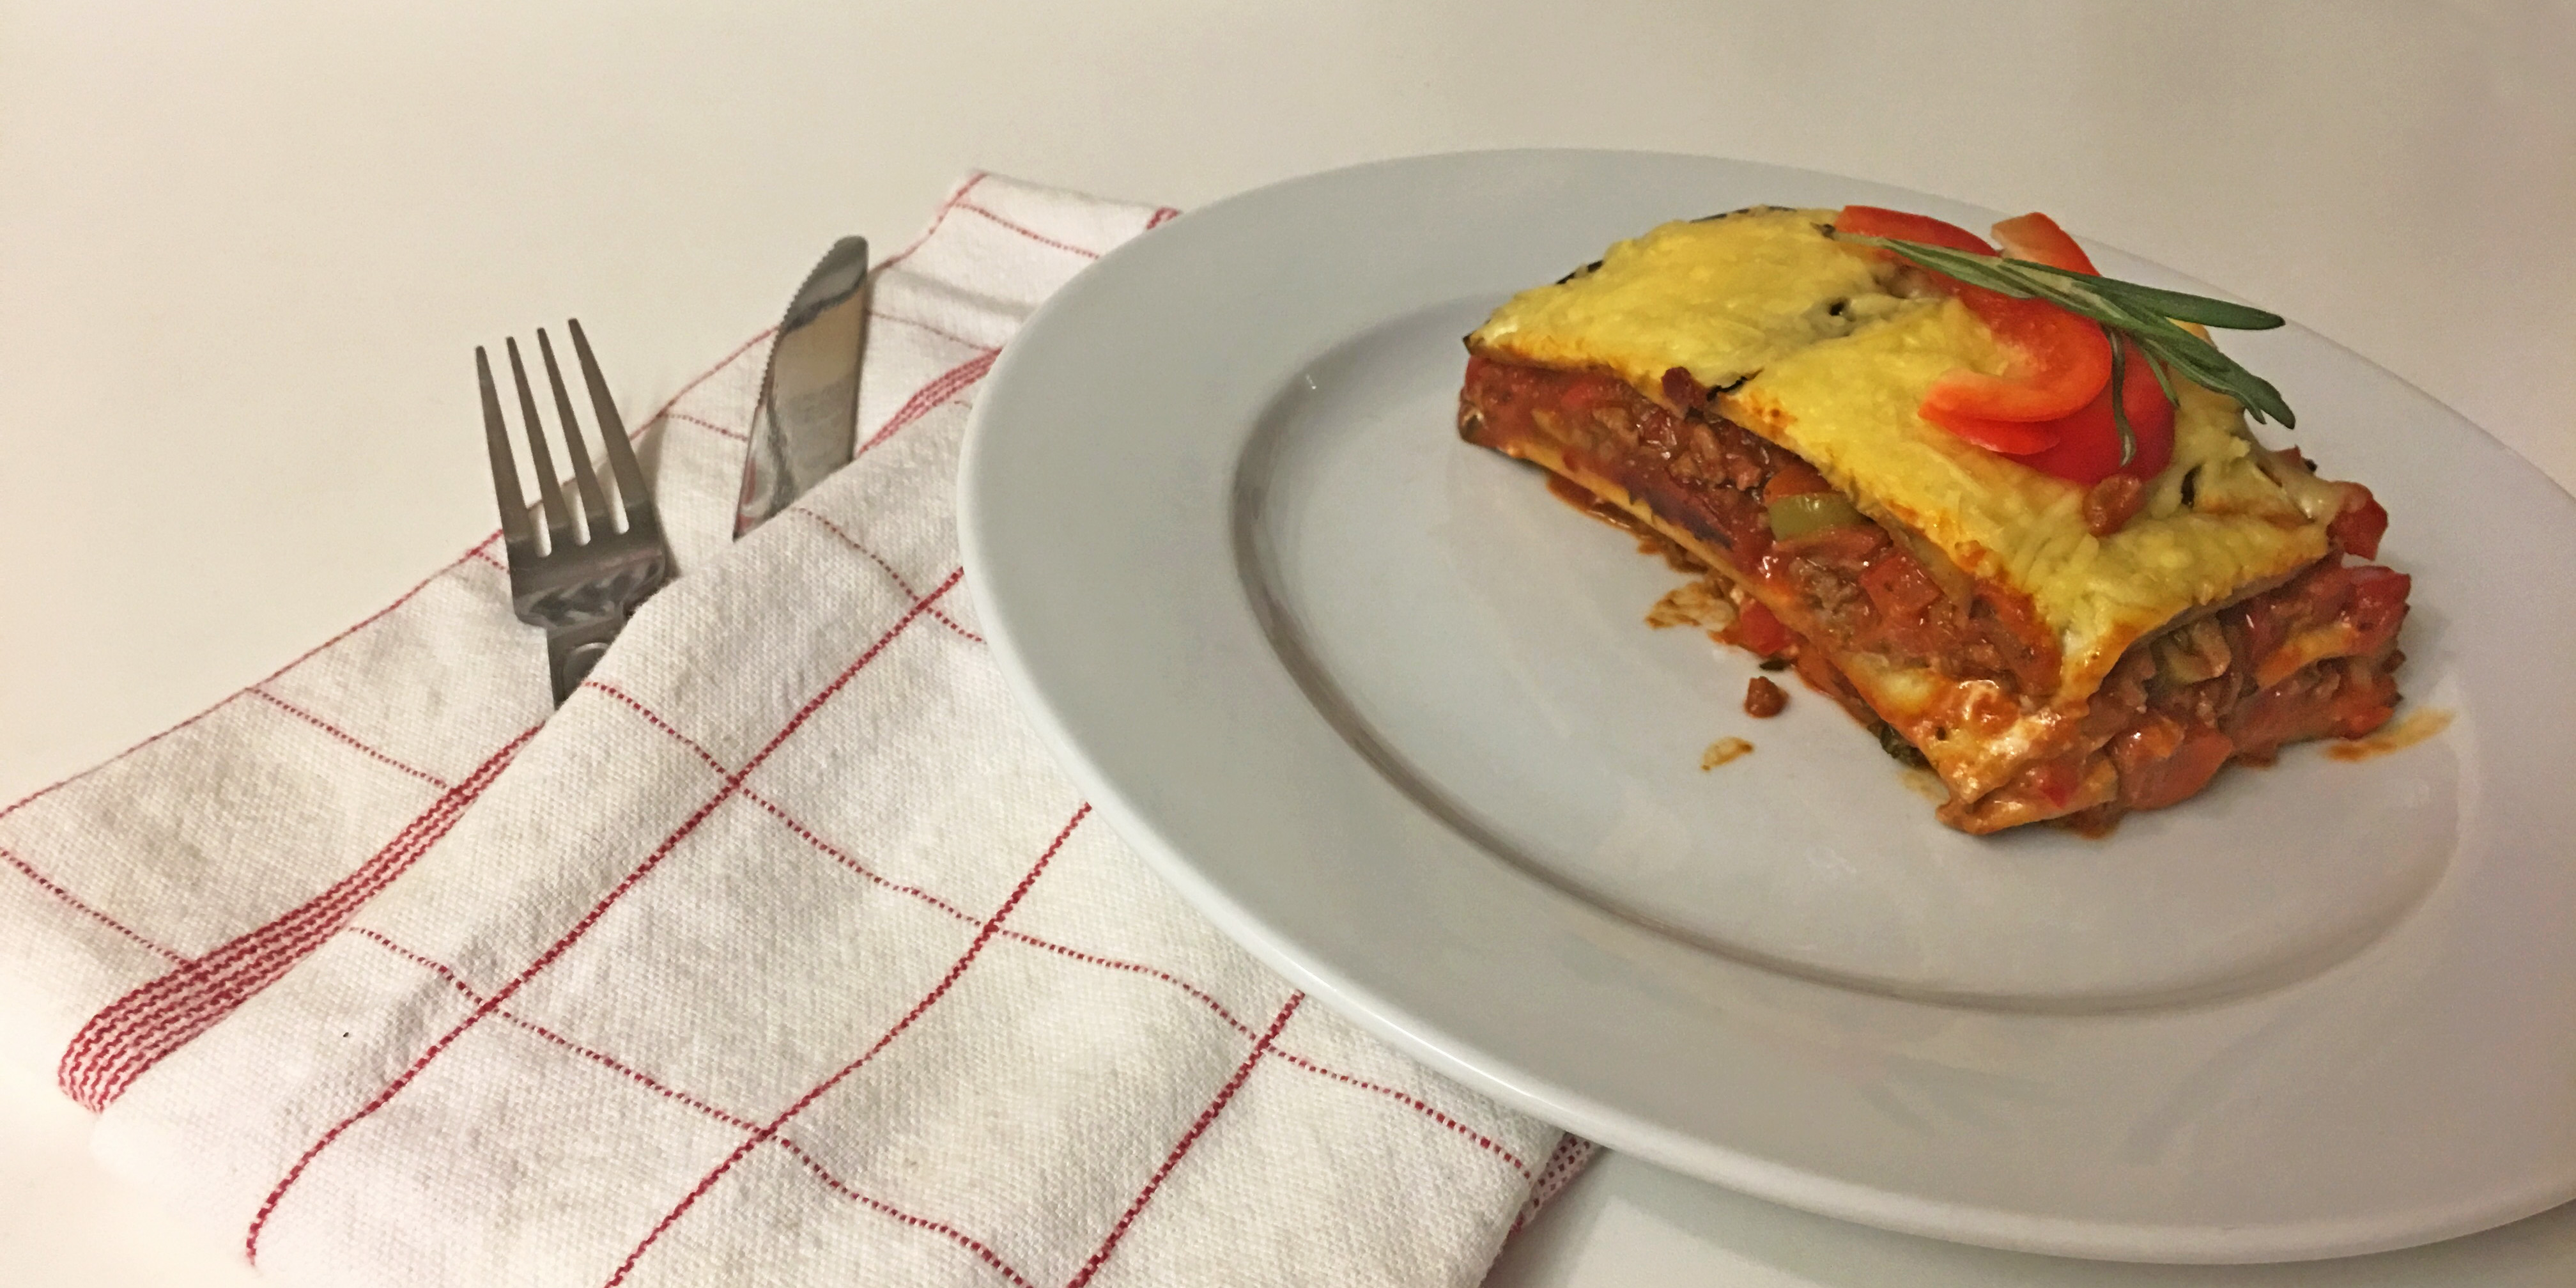 Recept: Lasagne, fodmap-vrij en koolhydraat verlaagd